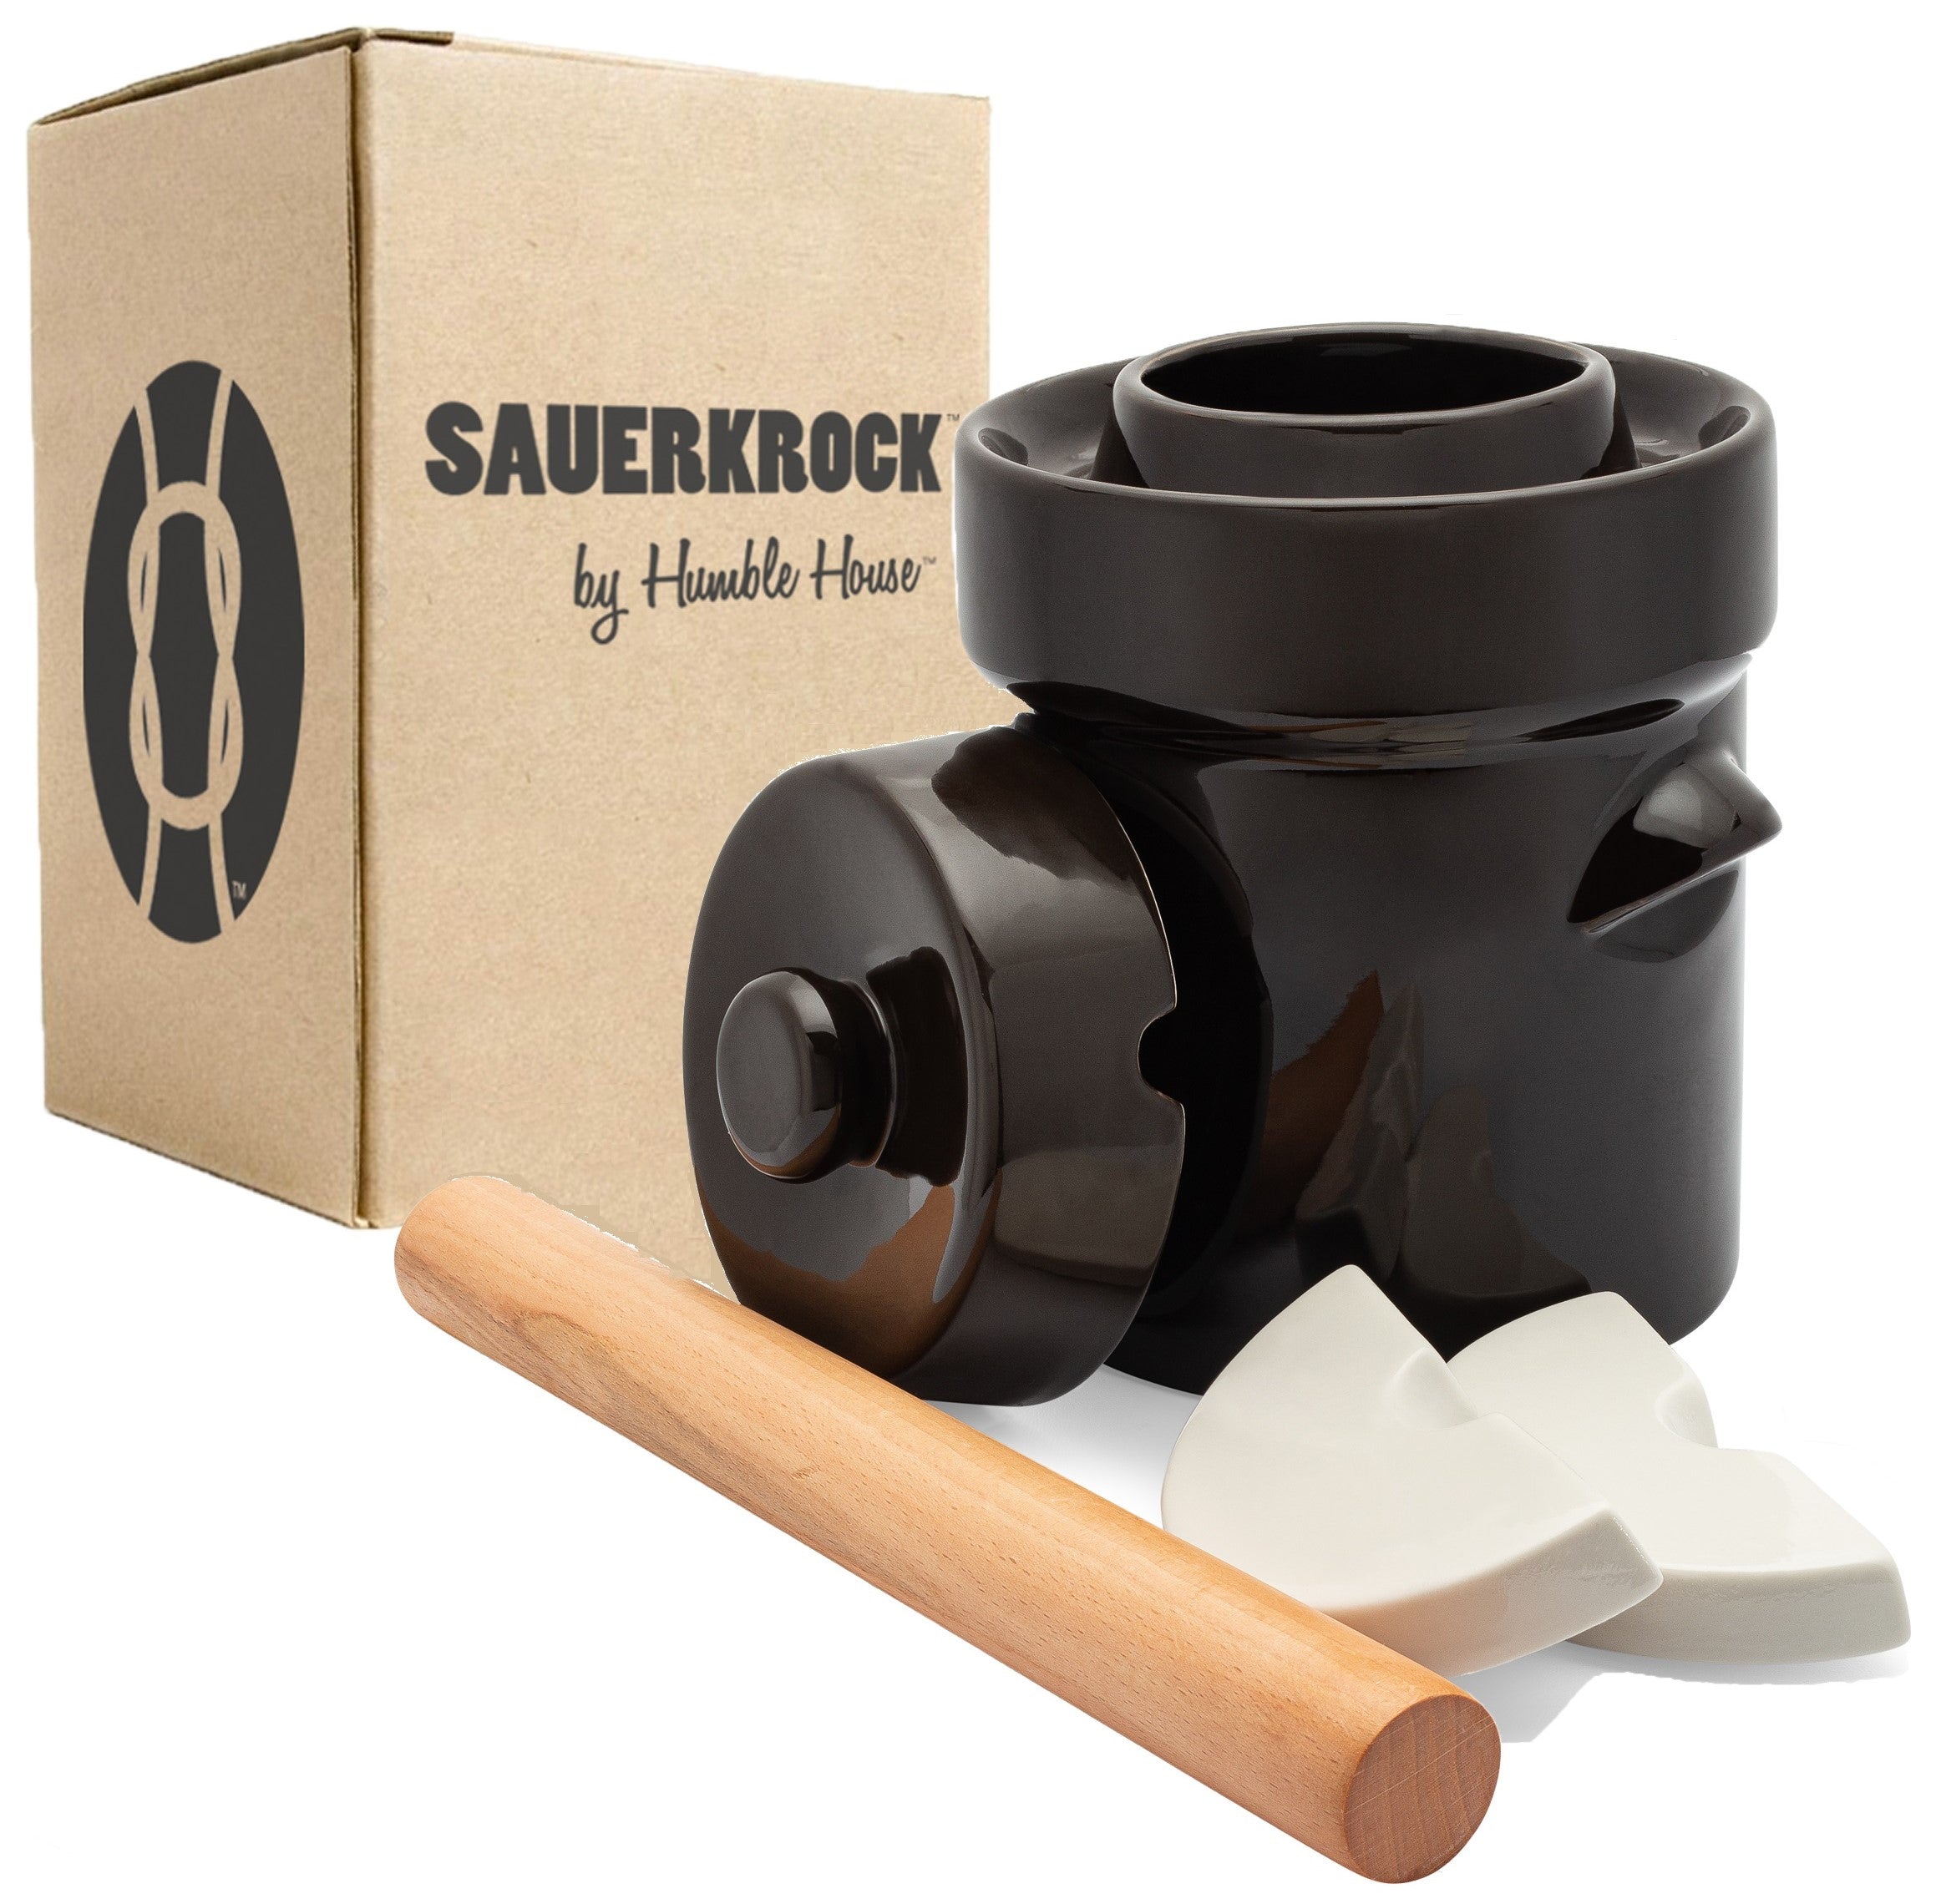 The SAUERKROCK™ Fermentation Crock